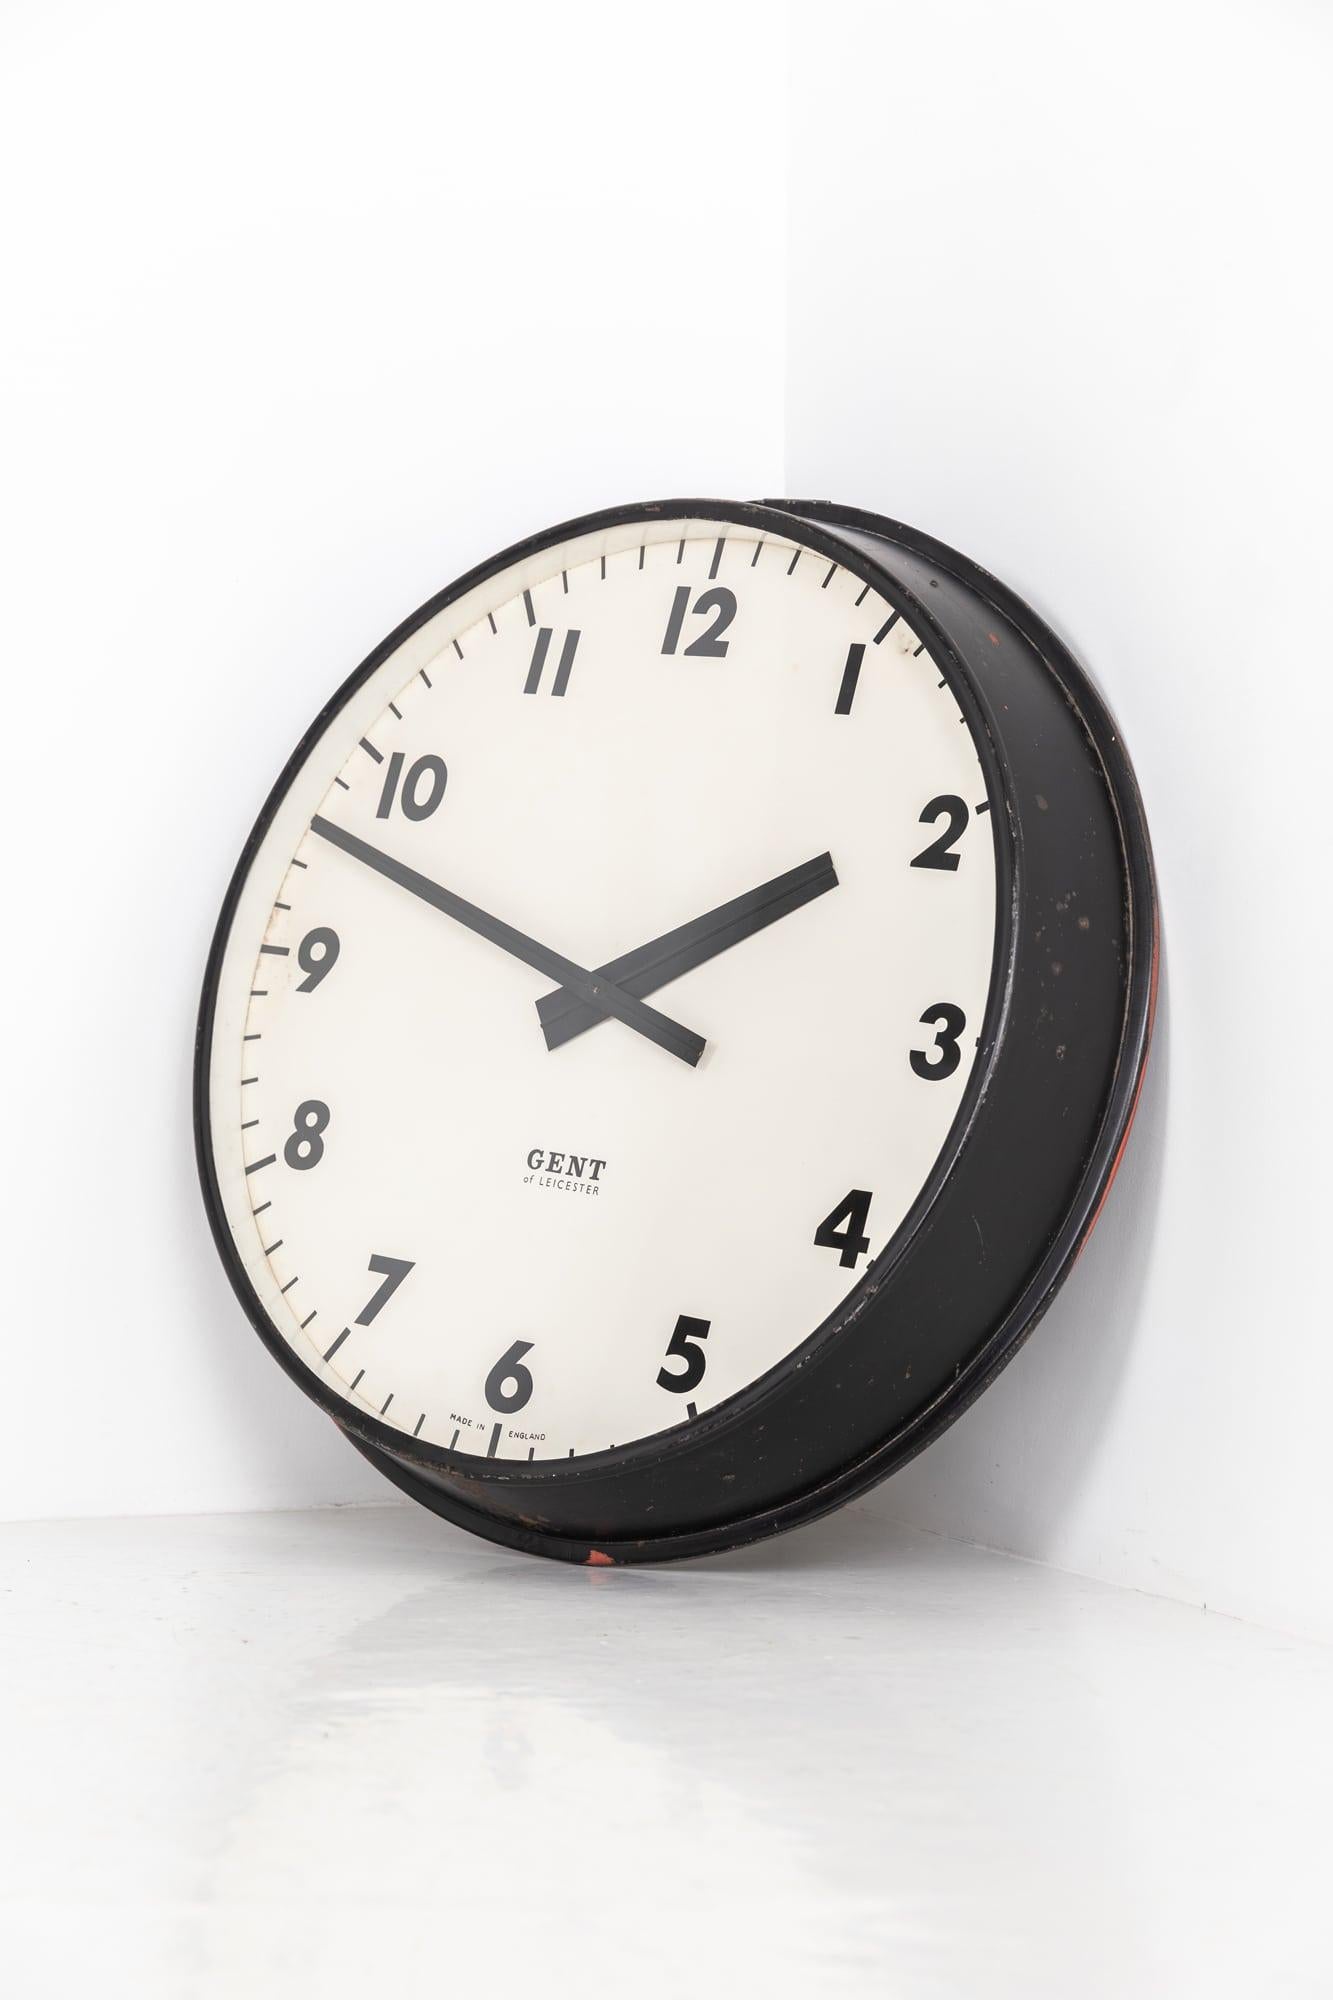 Grande et imposante horloge d'usine noire fabriquée en Angleterre par Gents of Leicester. C.1930.

Cette horloge est restée en parfait état d'origine, le boîtier noir peint en usine ayant été ciré pour préserver la patine accumulée au fil des ans.